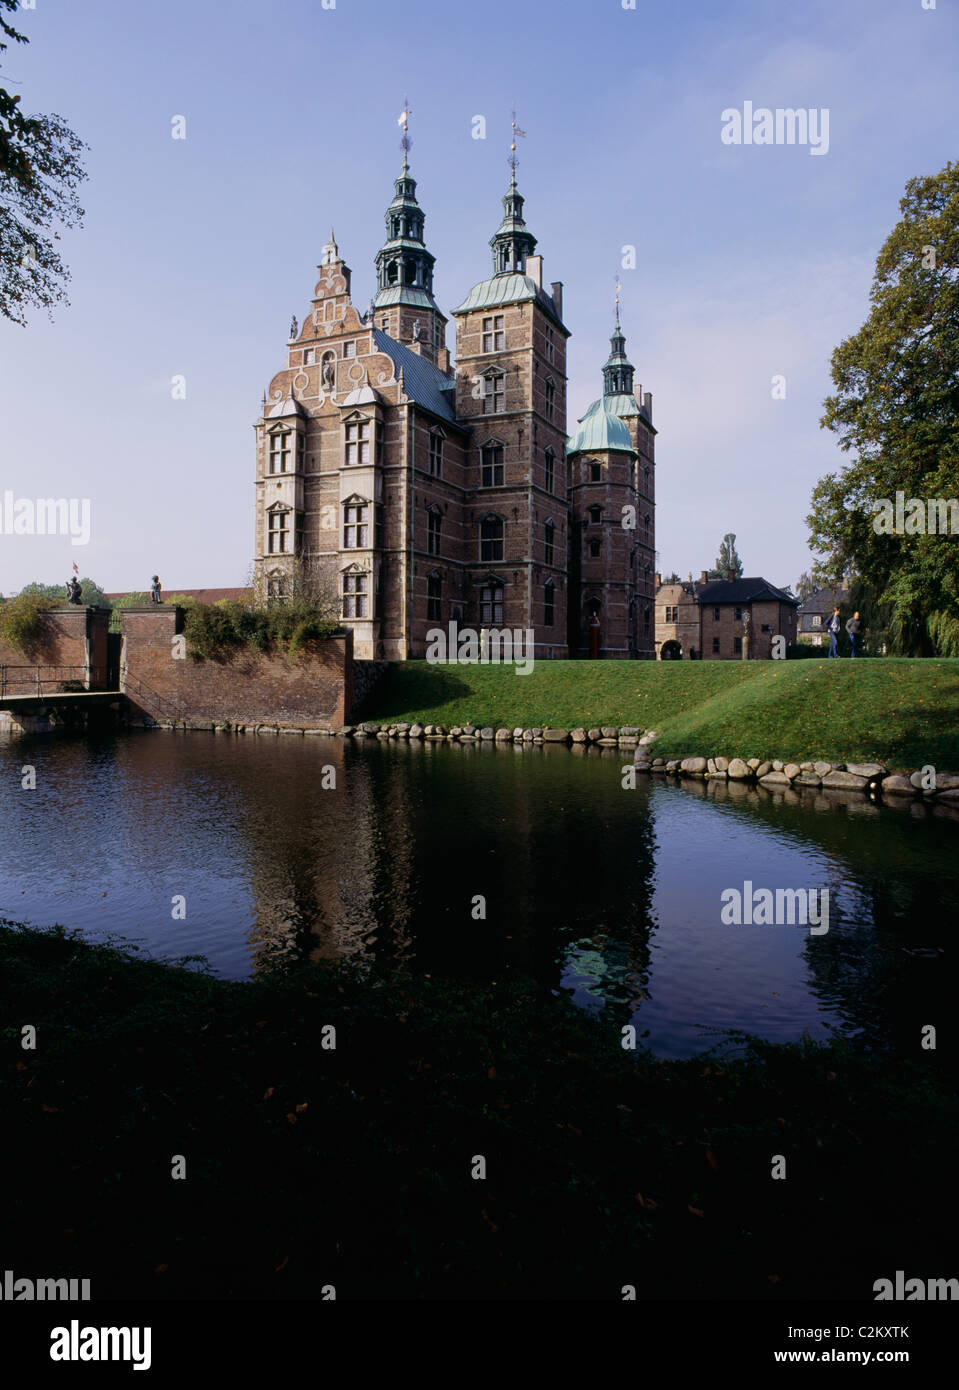 Rosenborg Slot (castello), Olandese in stile rinascimentale, esterna, Copenaghen Foto Stock